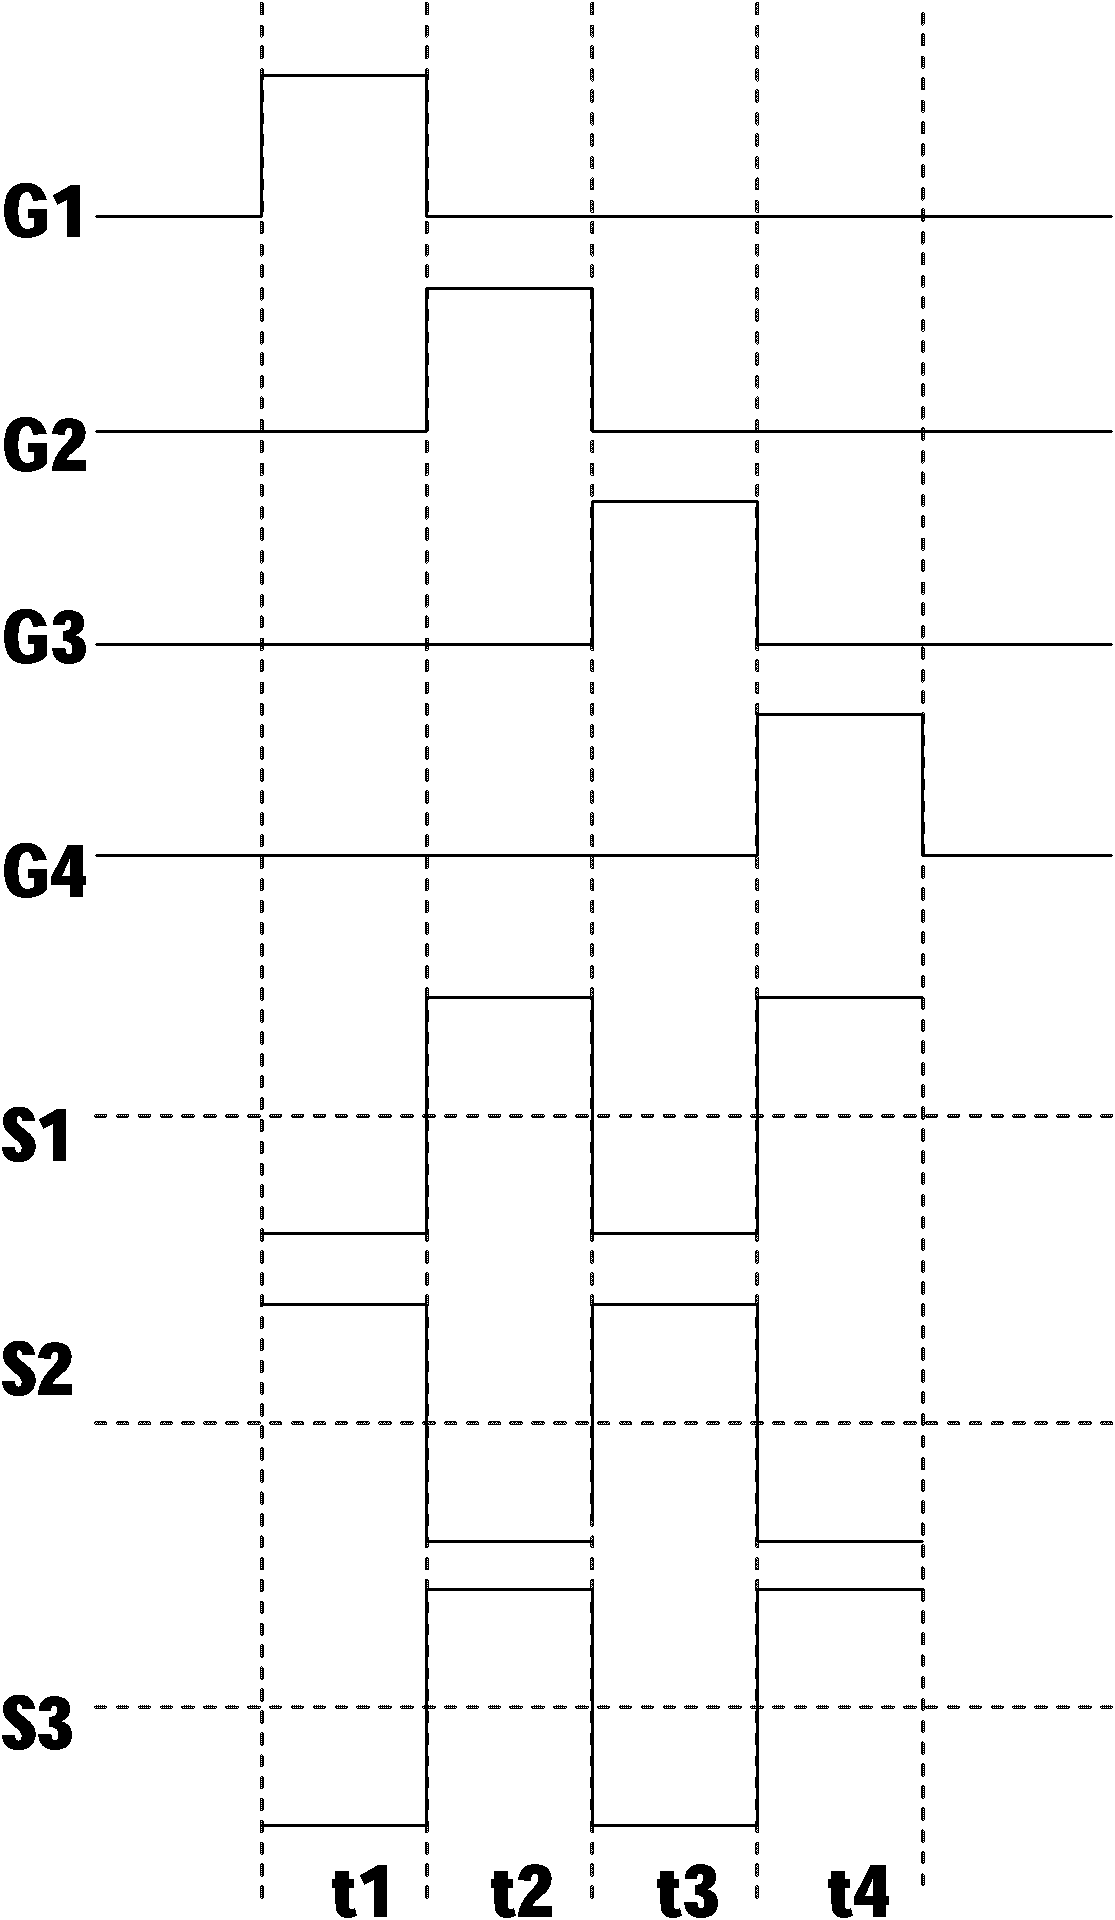 Bigrid horizontal pixel reversal driving method